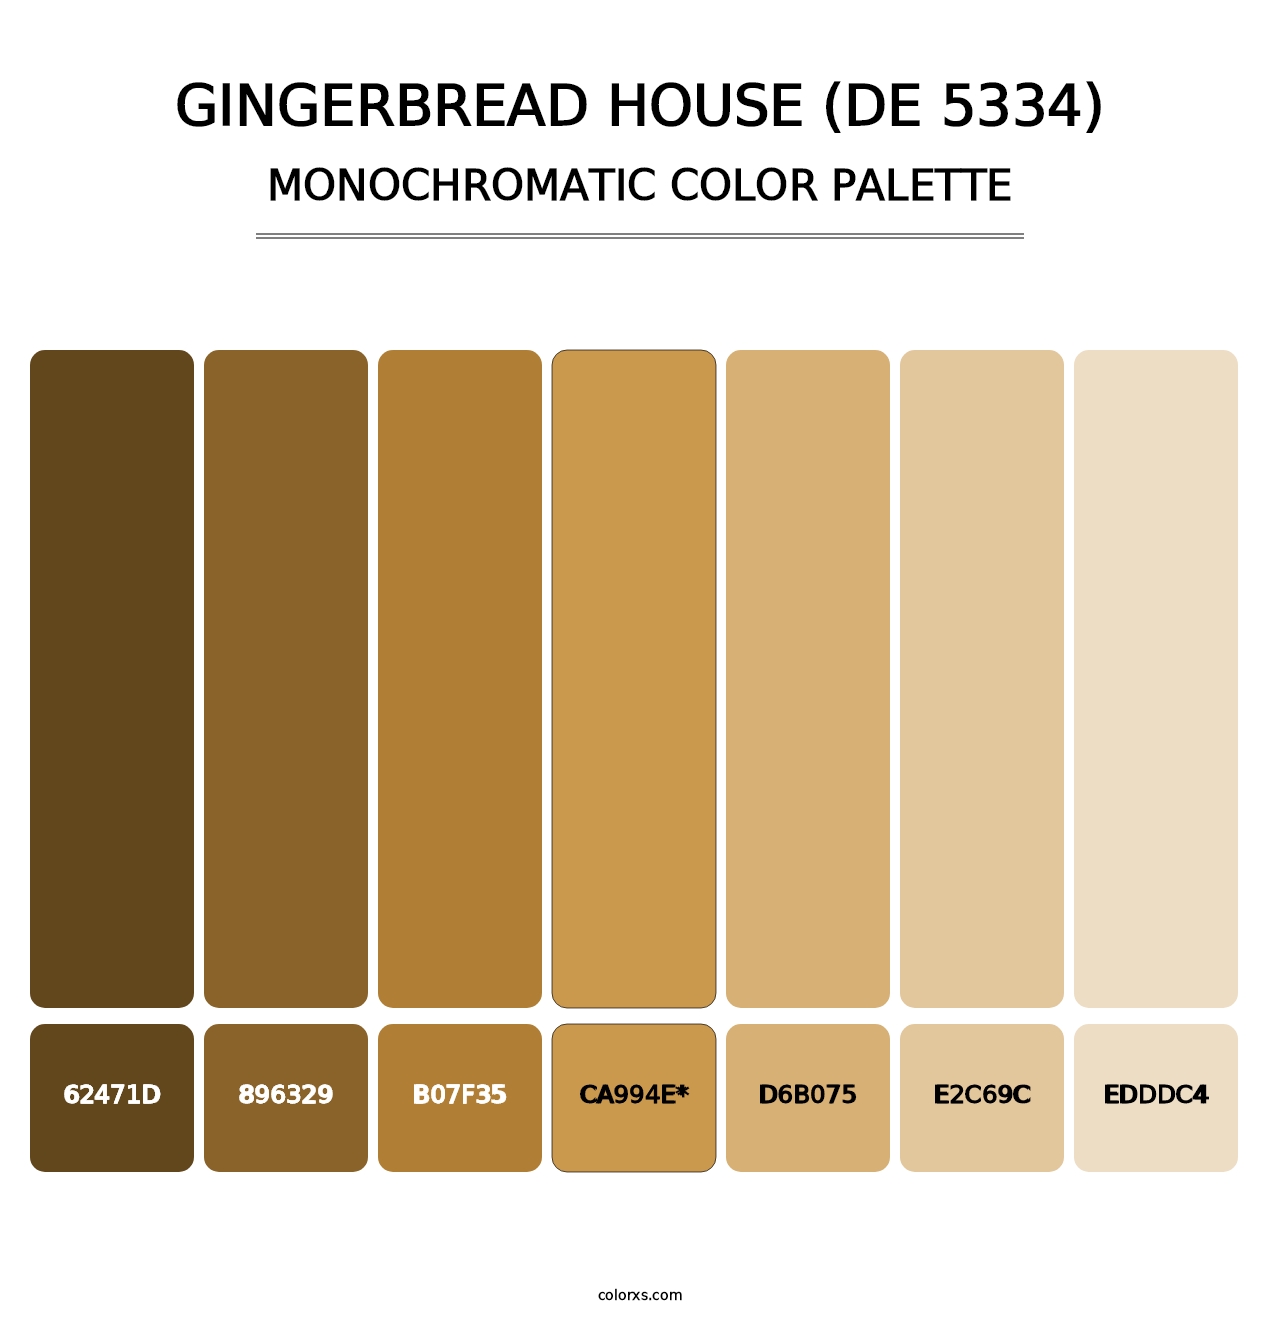 Gingerbread House (DE 5334) - Monochromatic Color Palette